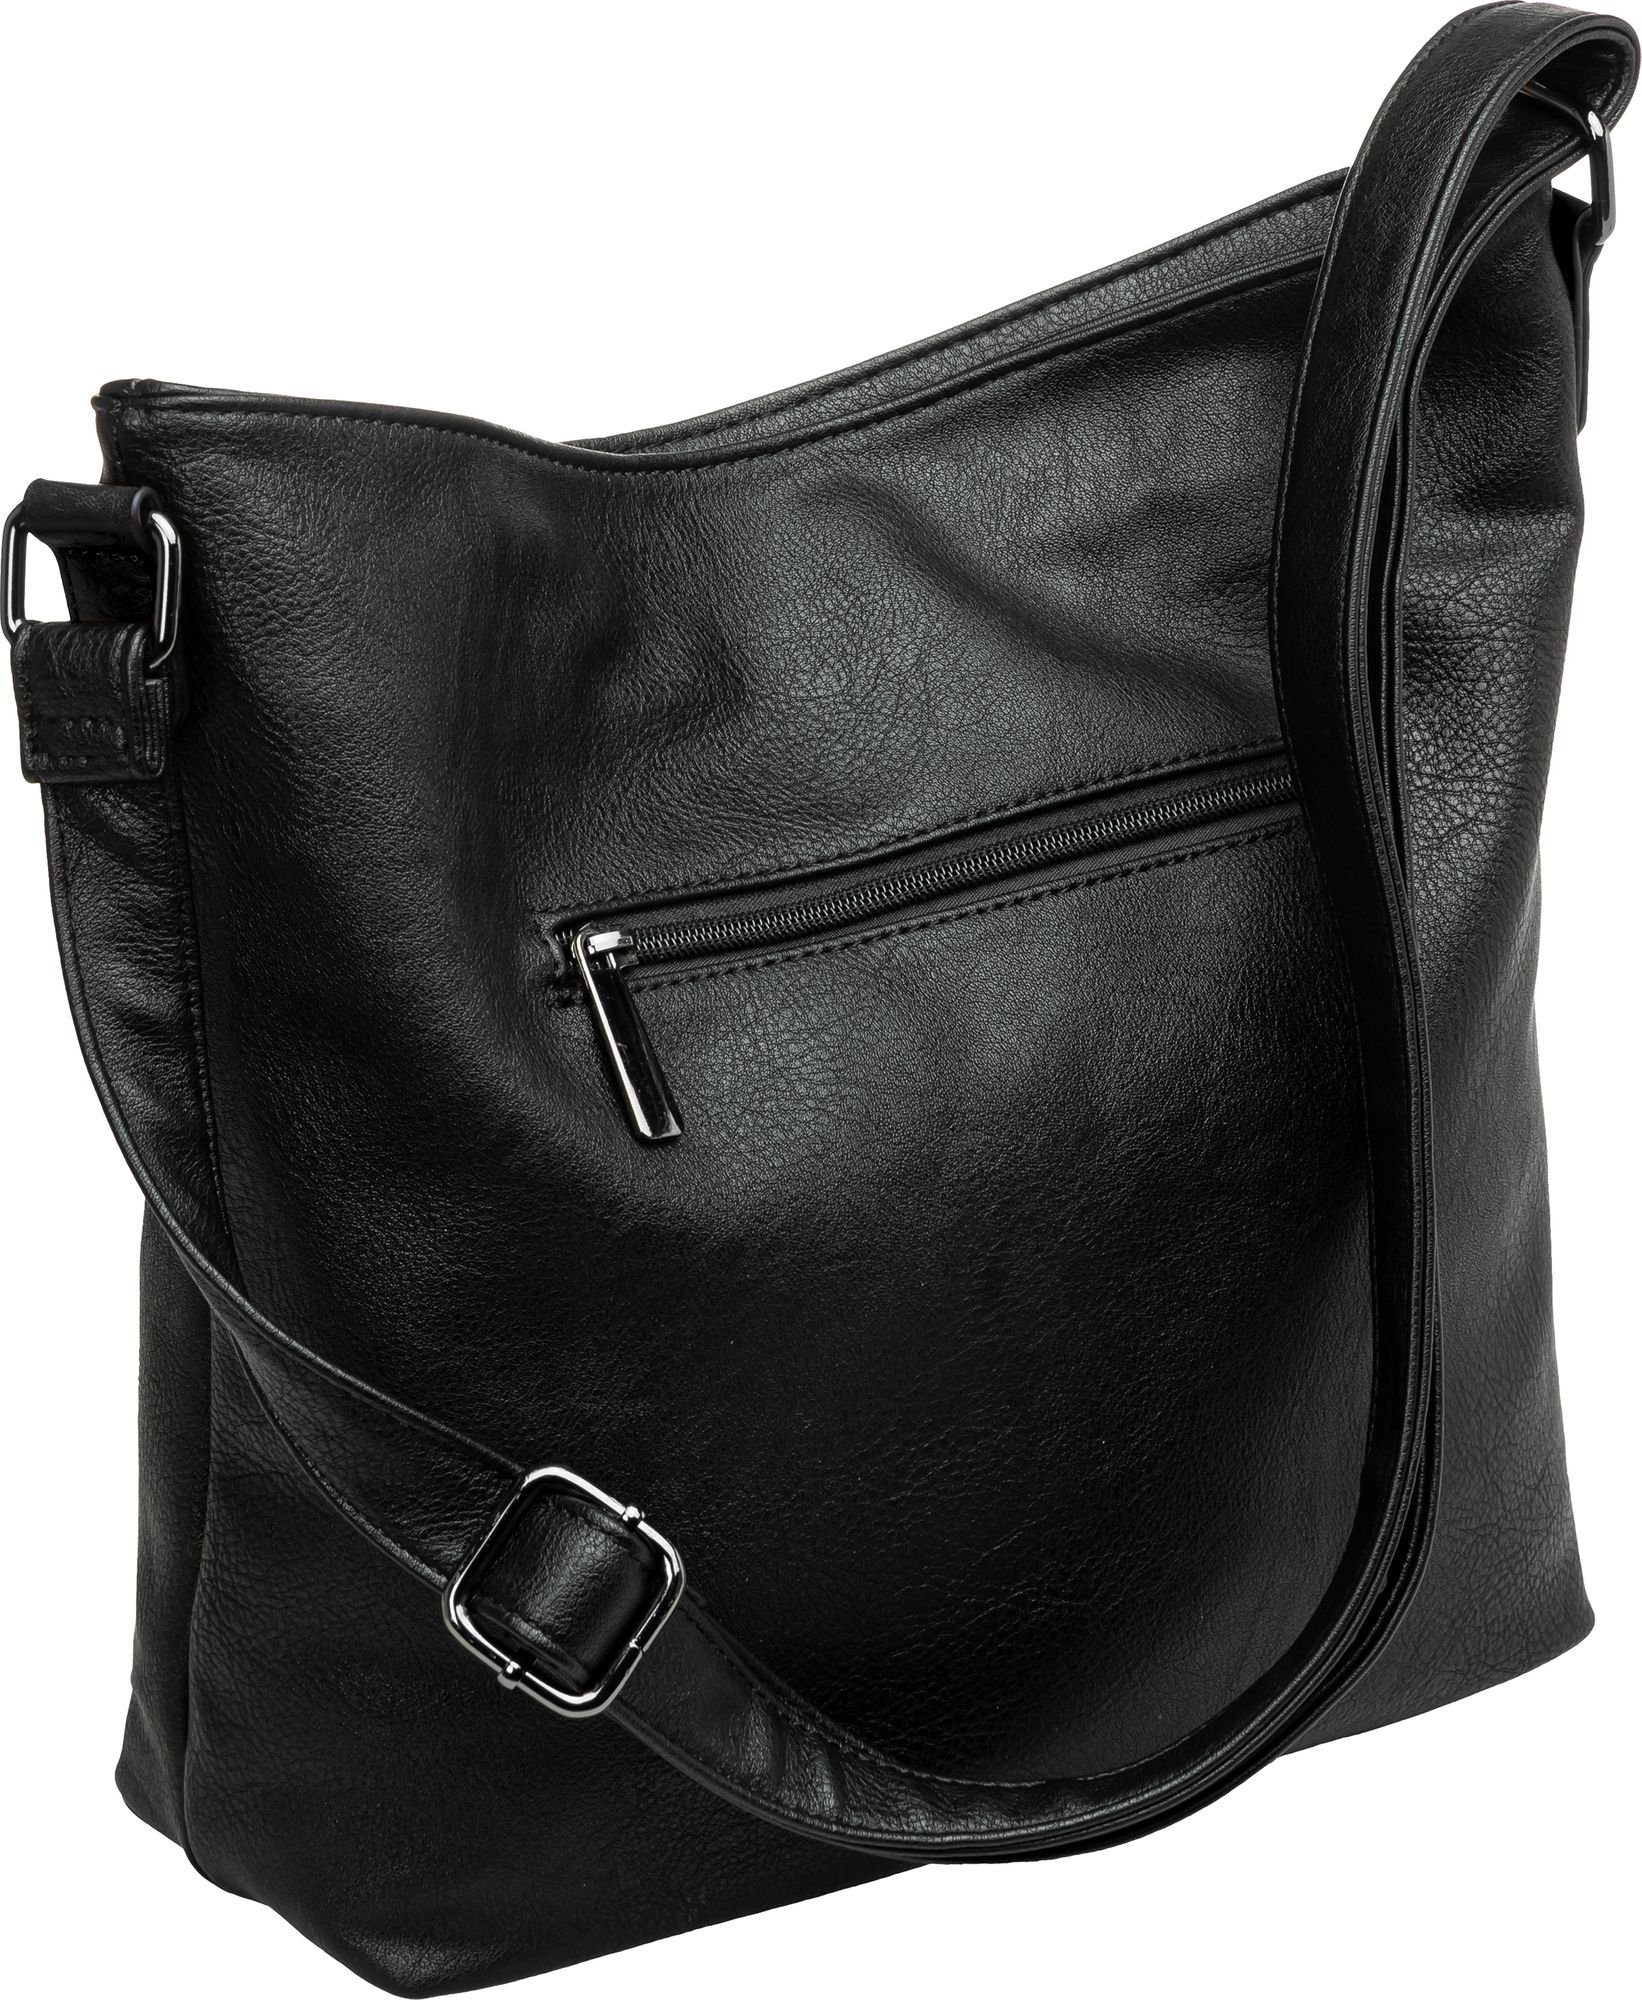 TS1070 Crossbody sportlich Umhängetasche schwarz Damen elegante mittelgroße Umhängetasche Bag Caspar